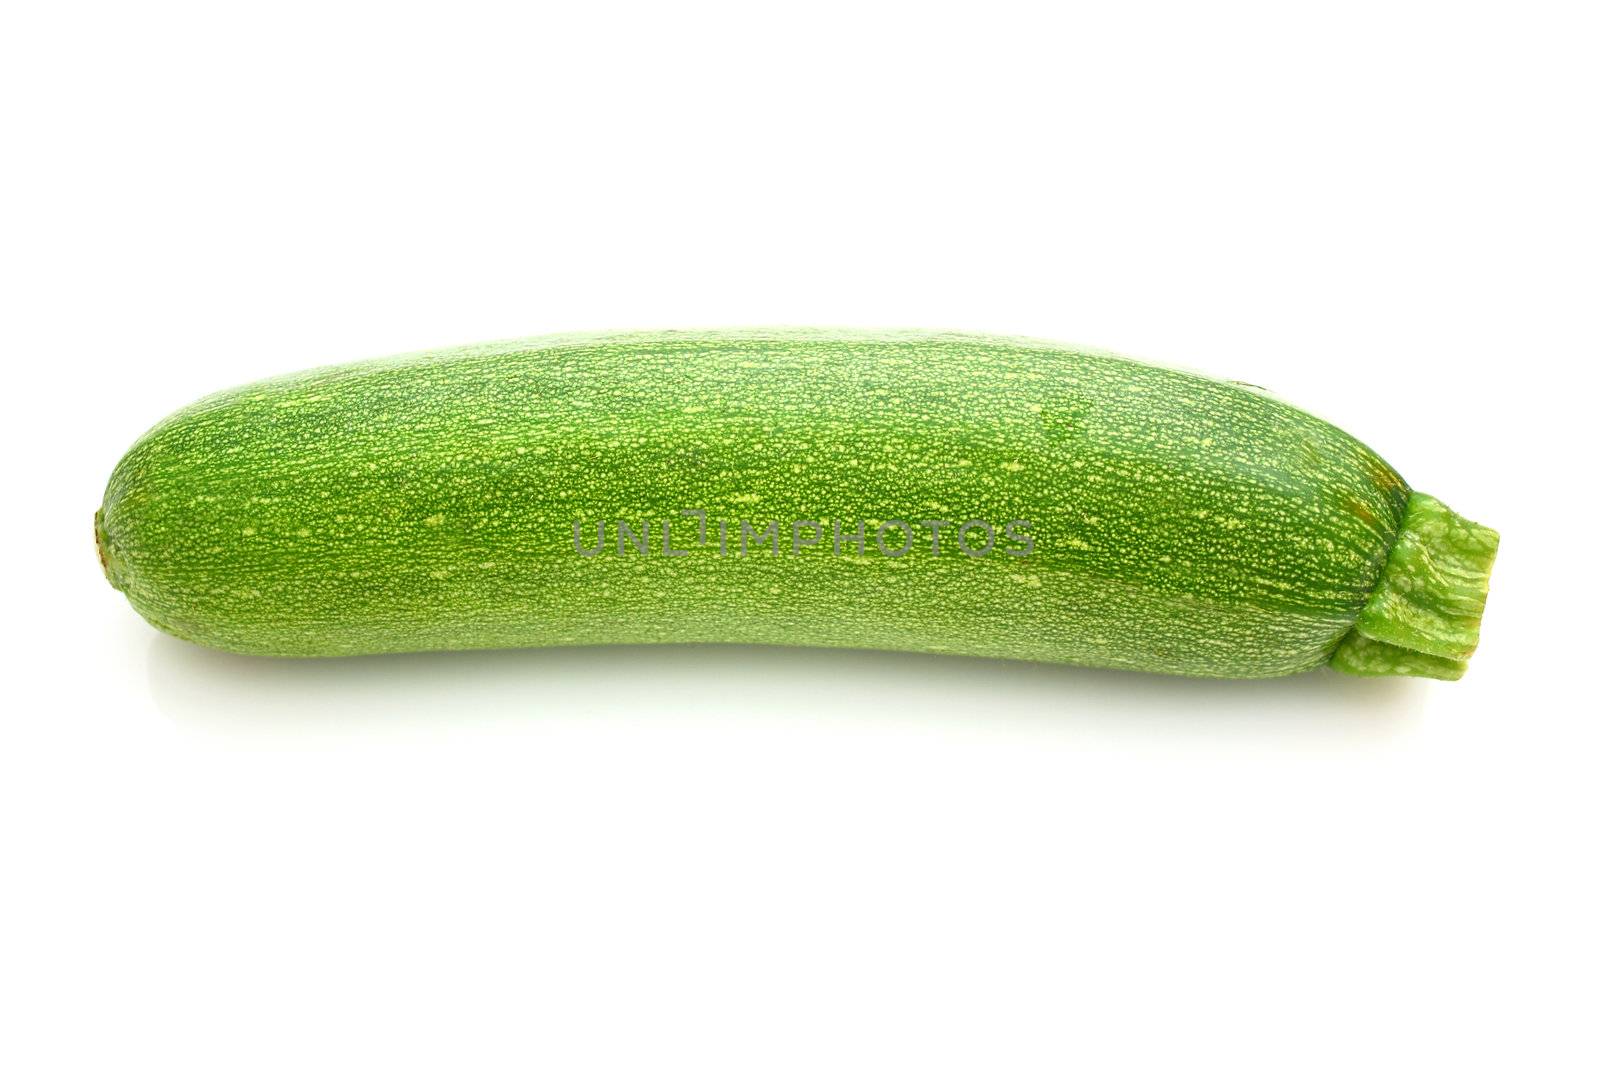 Zucchini by juweber